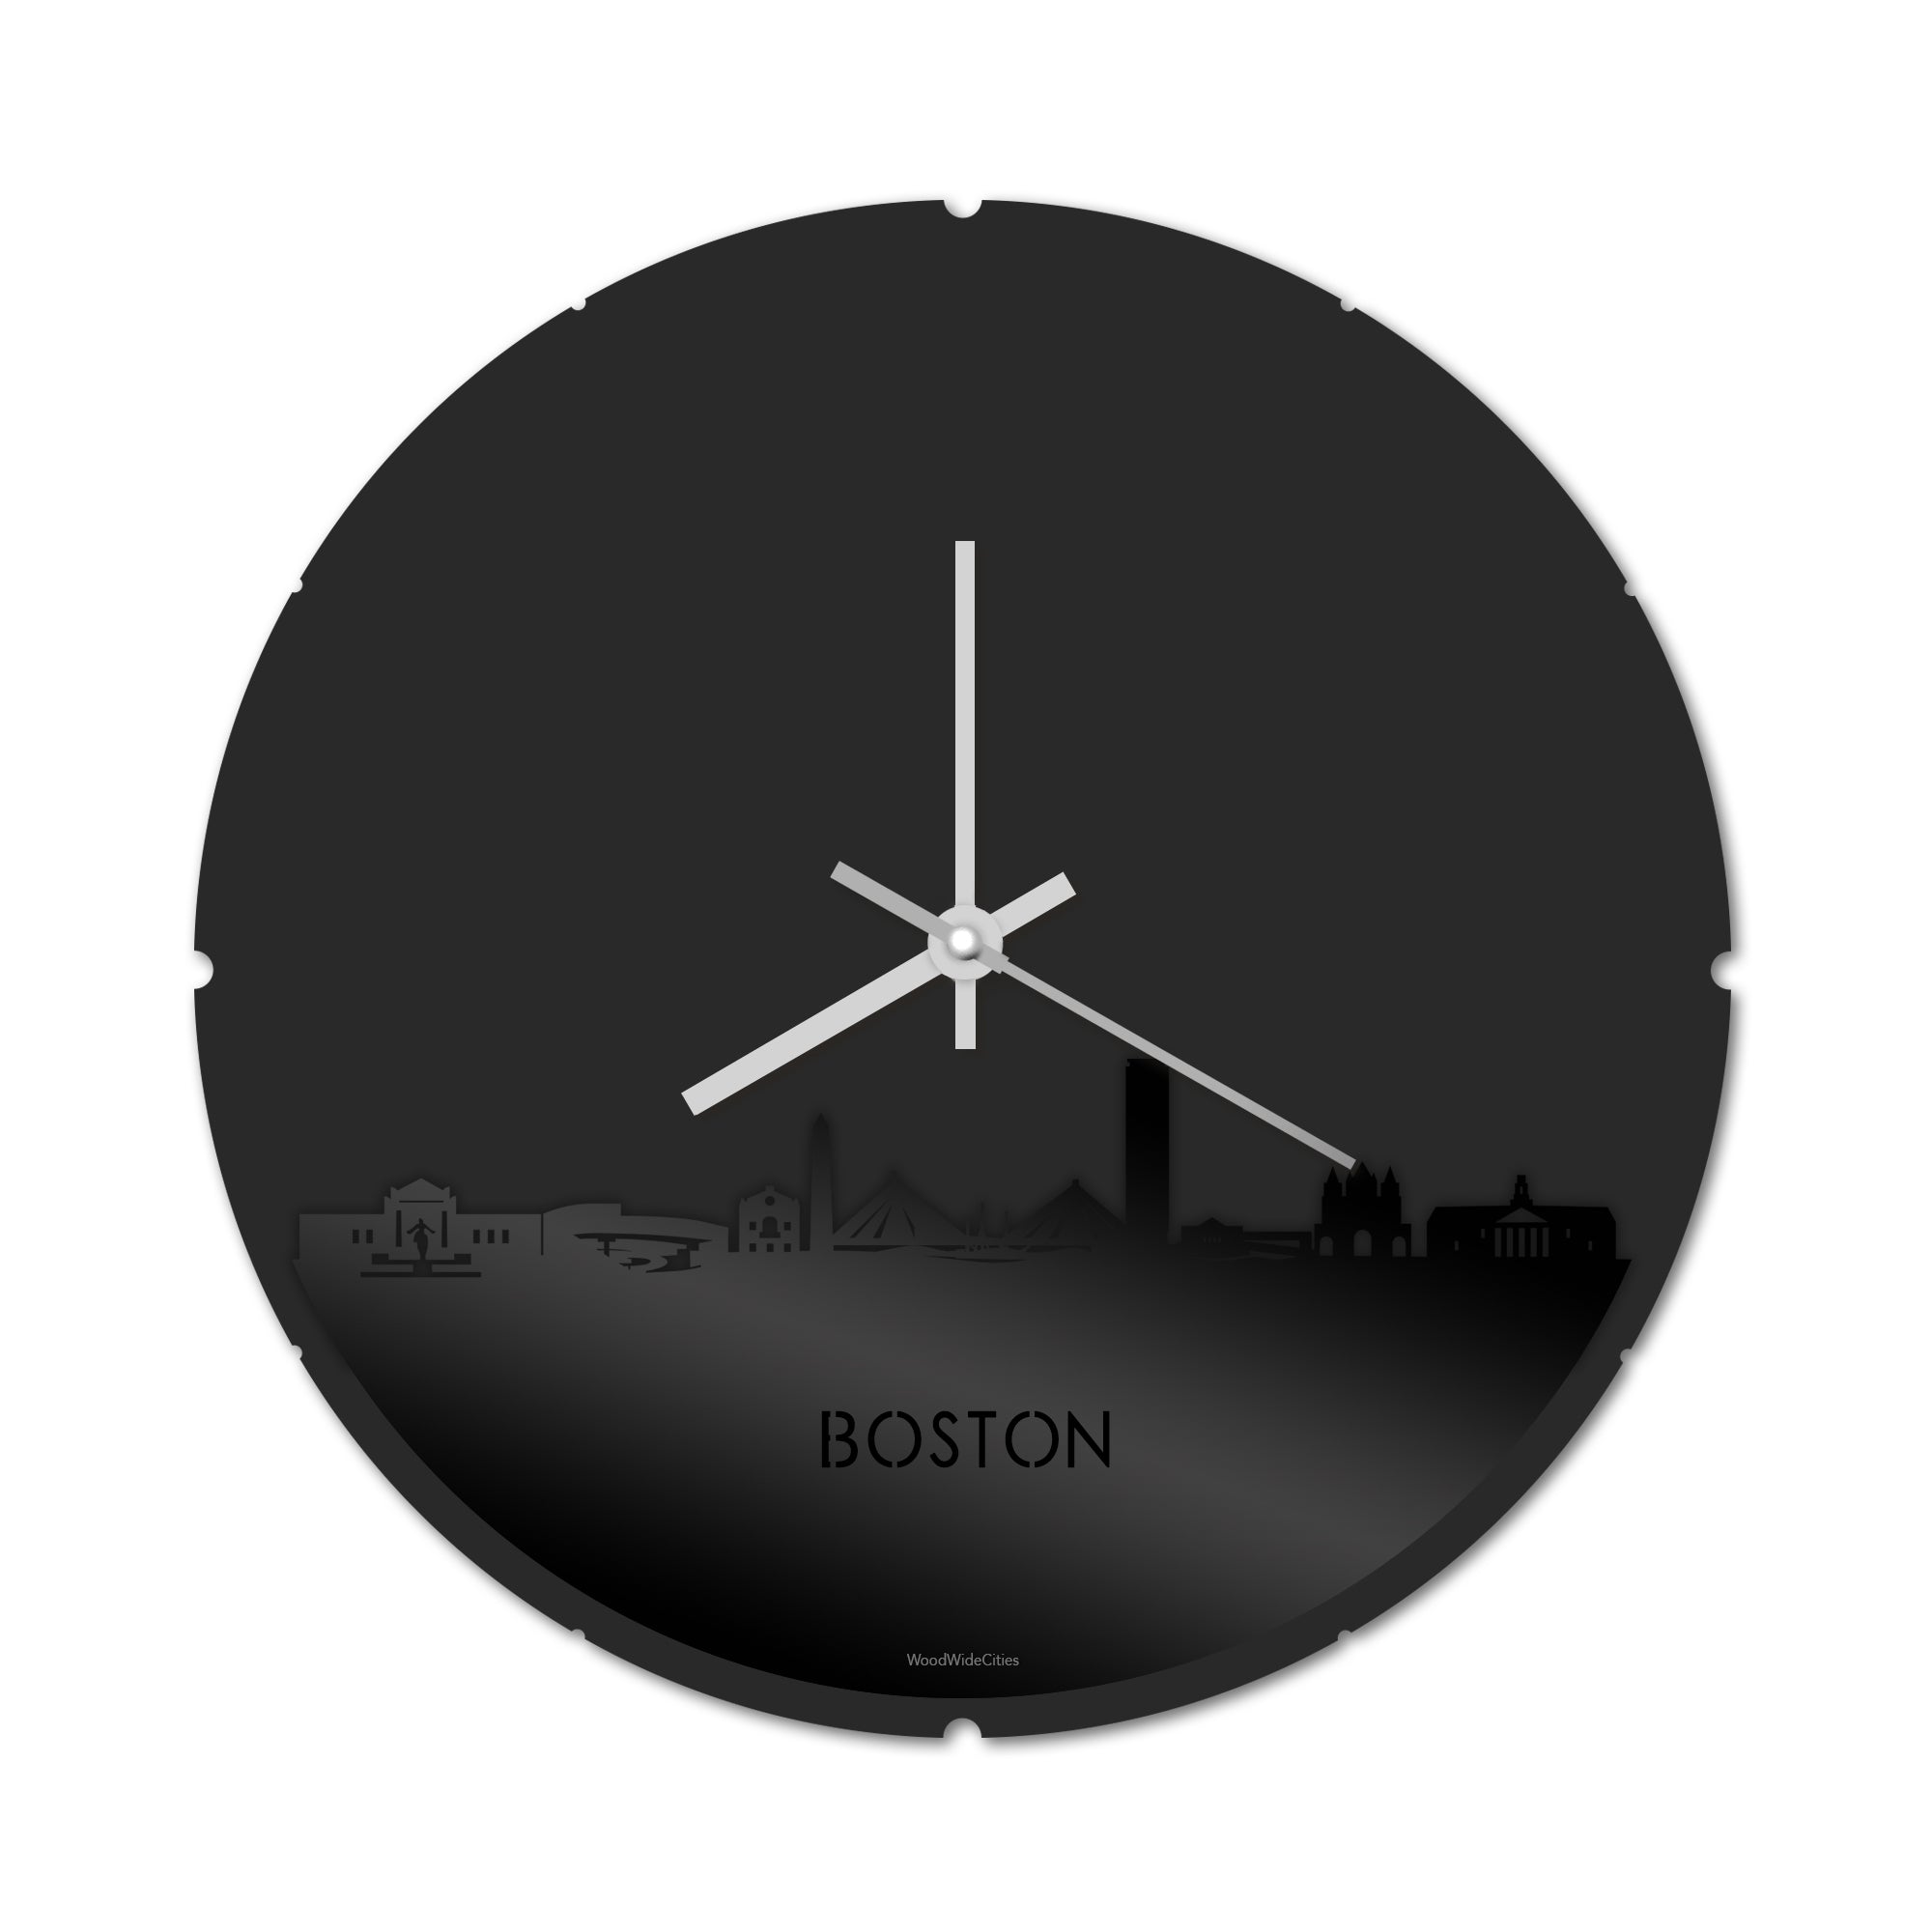 Skyline Klok Rond Boston Zwart glanzend gerecycled kunststof cadeau decoratie relatiegeschenk van WoodWideCities